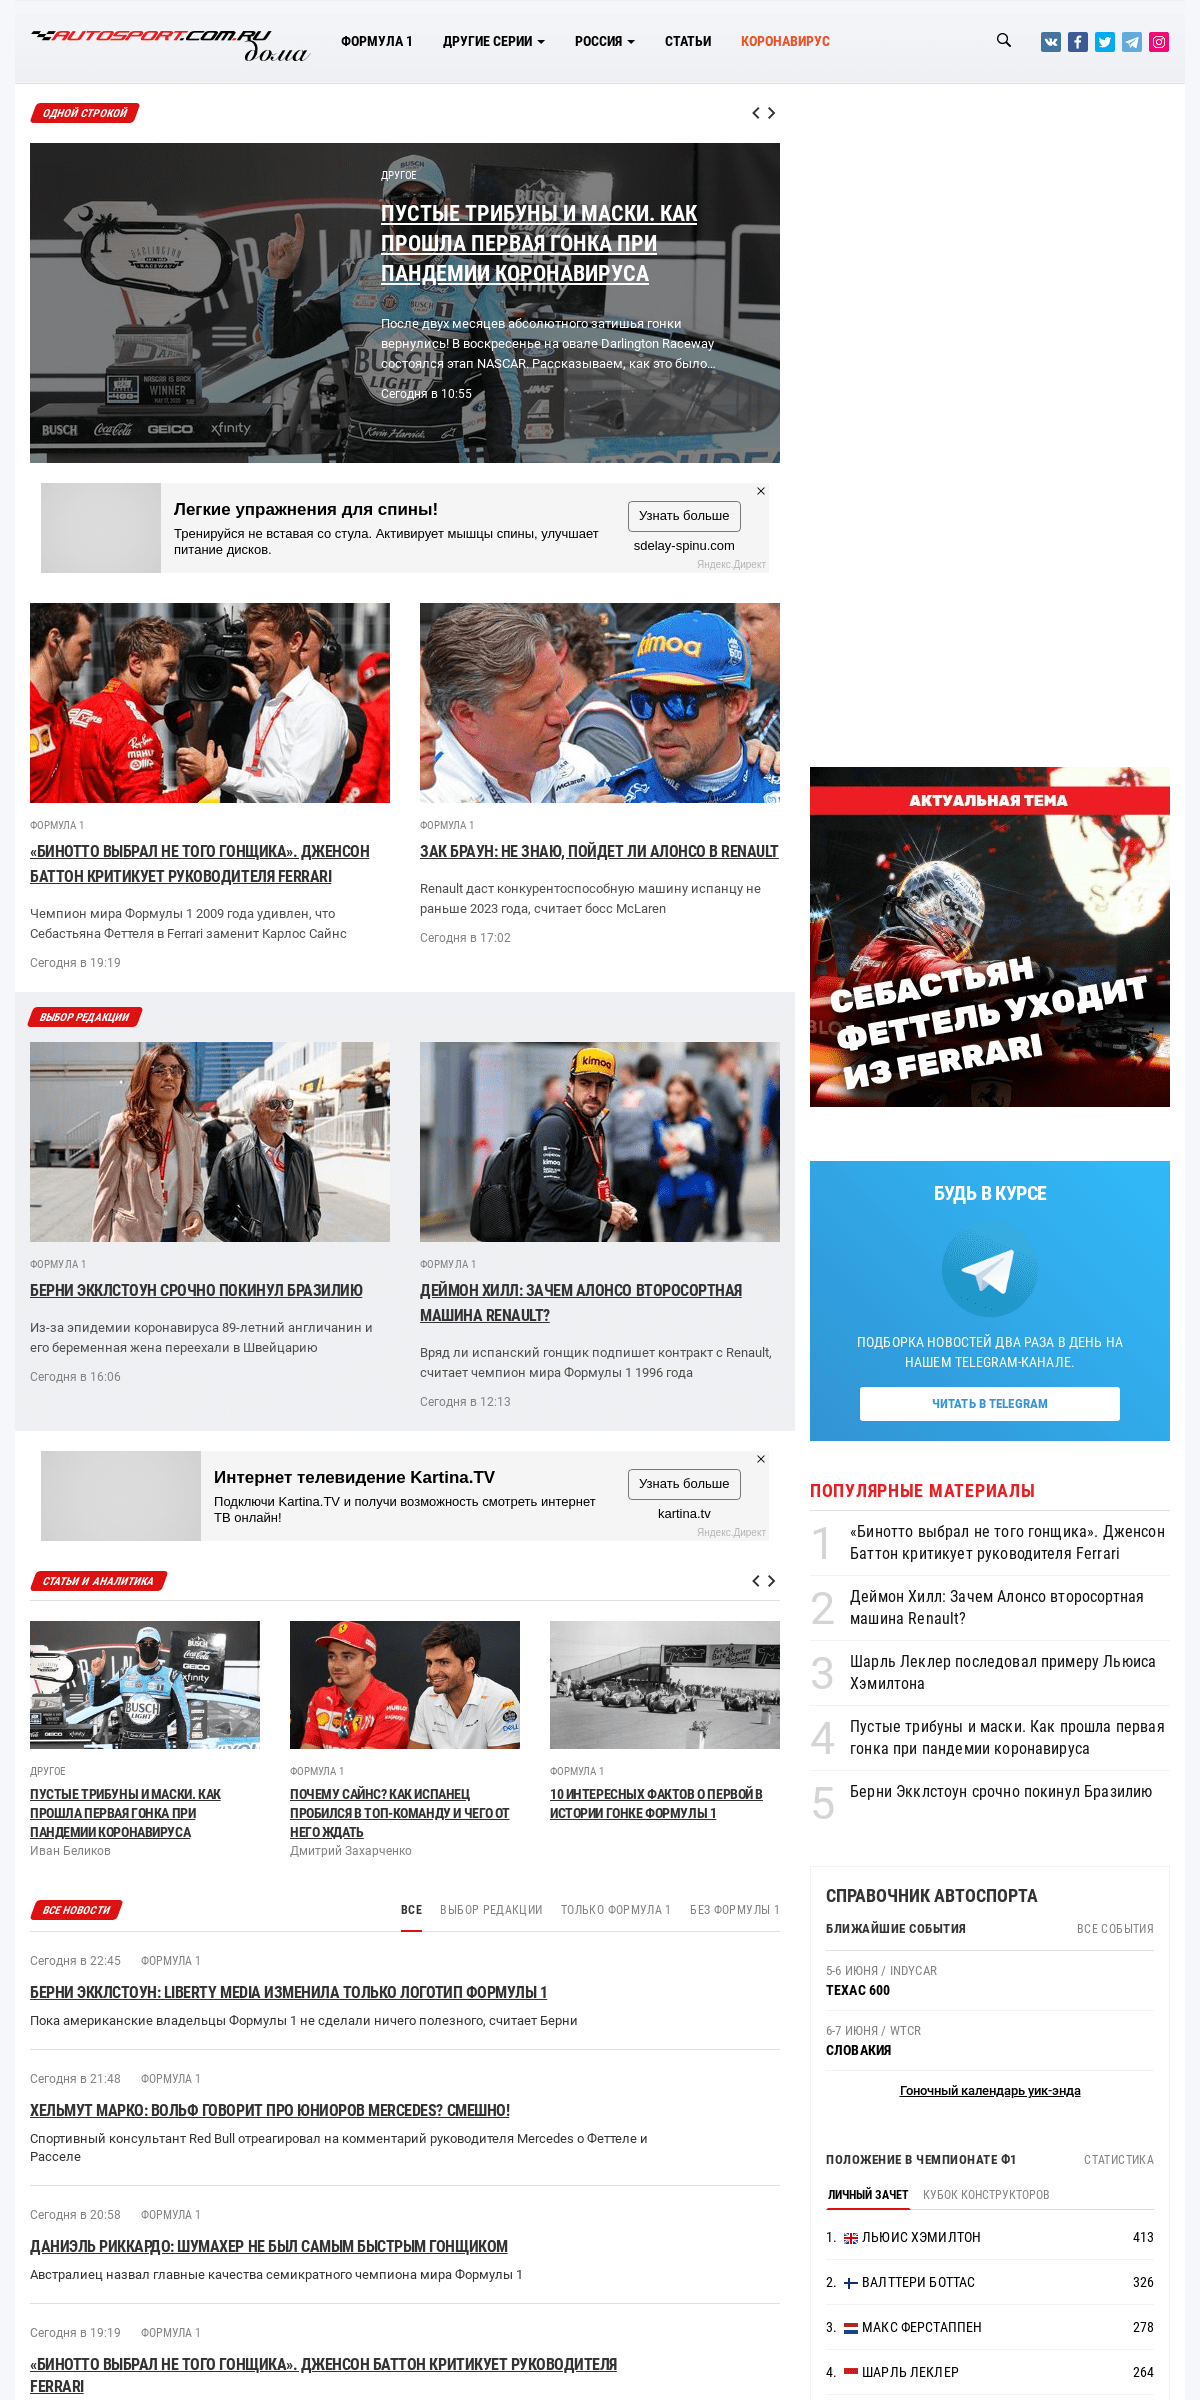 A complete backup of autosport.com.ru